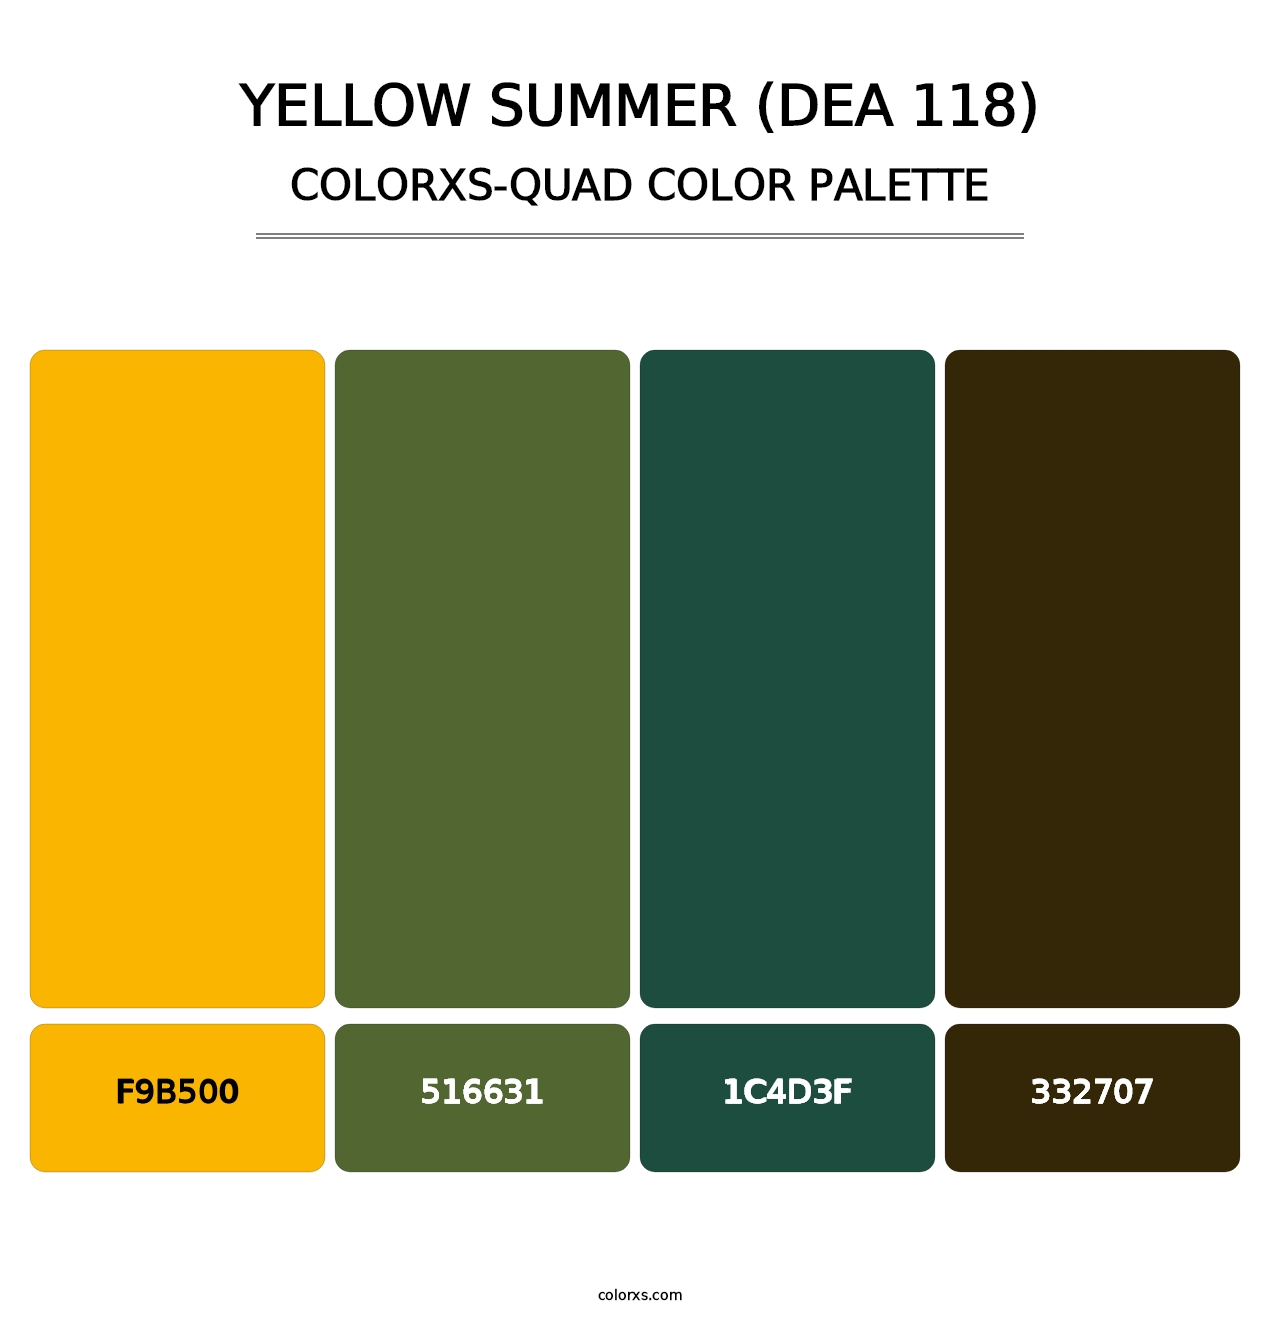 Yellow Summer (DEA 118) - Colorxs Quad Palette